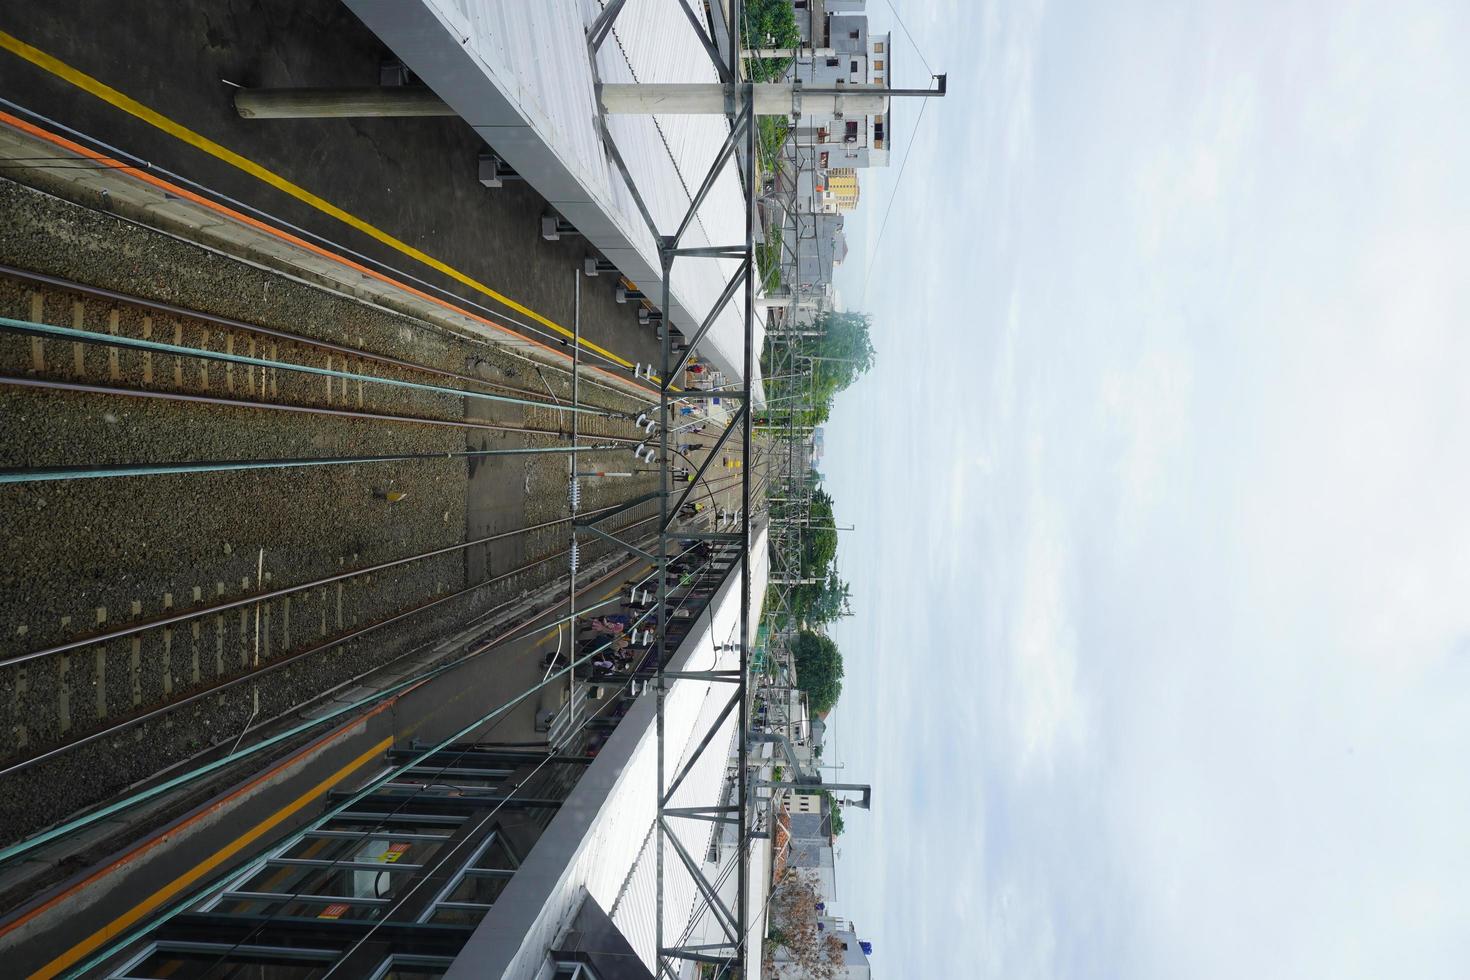 vista da estação duri commuter line em jakarta. foto